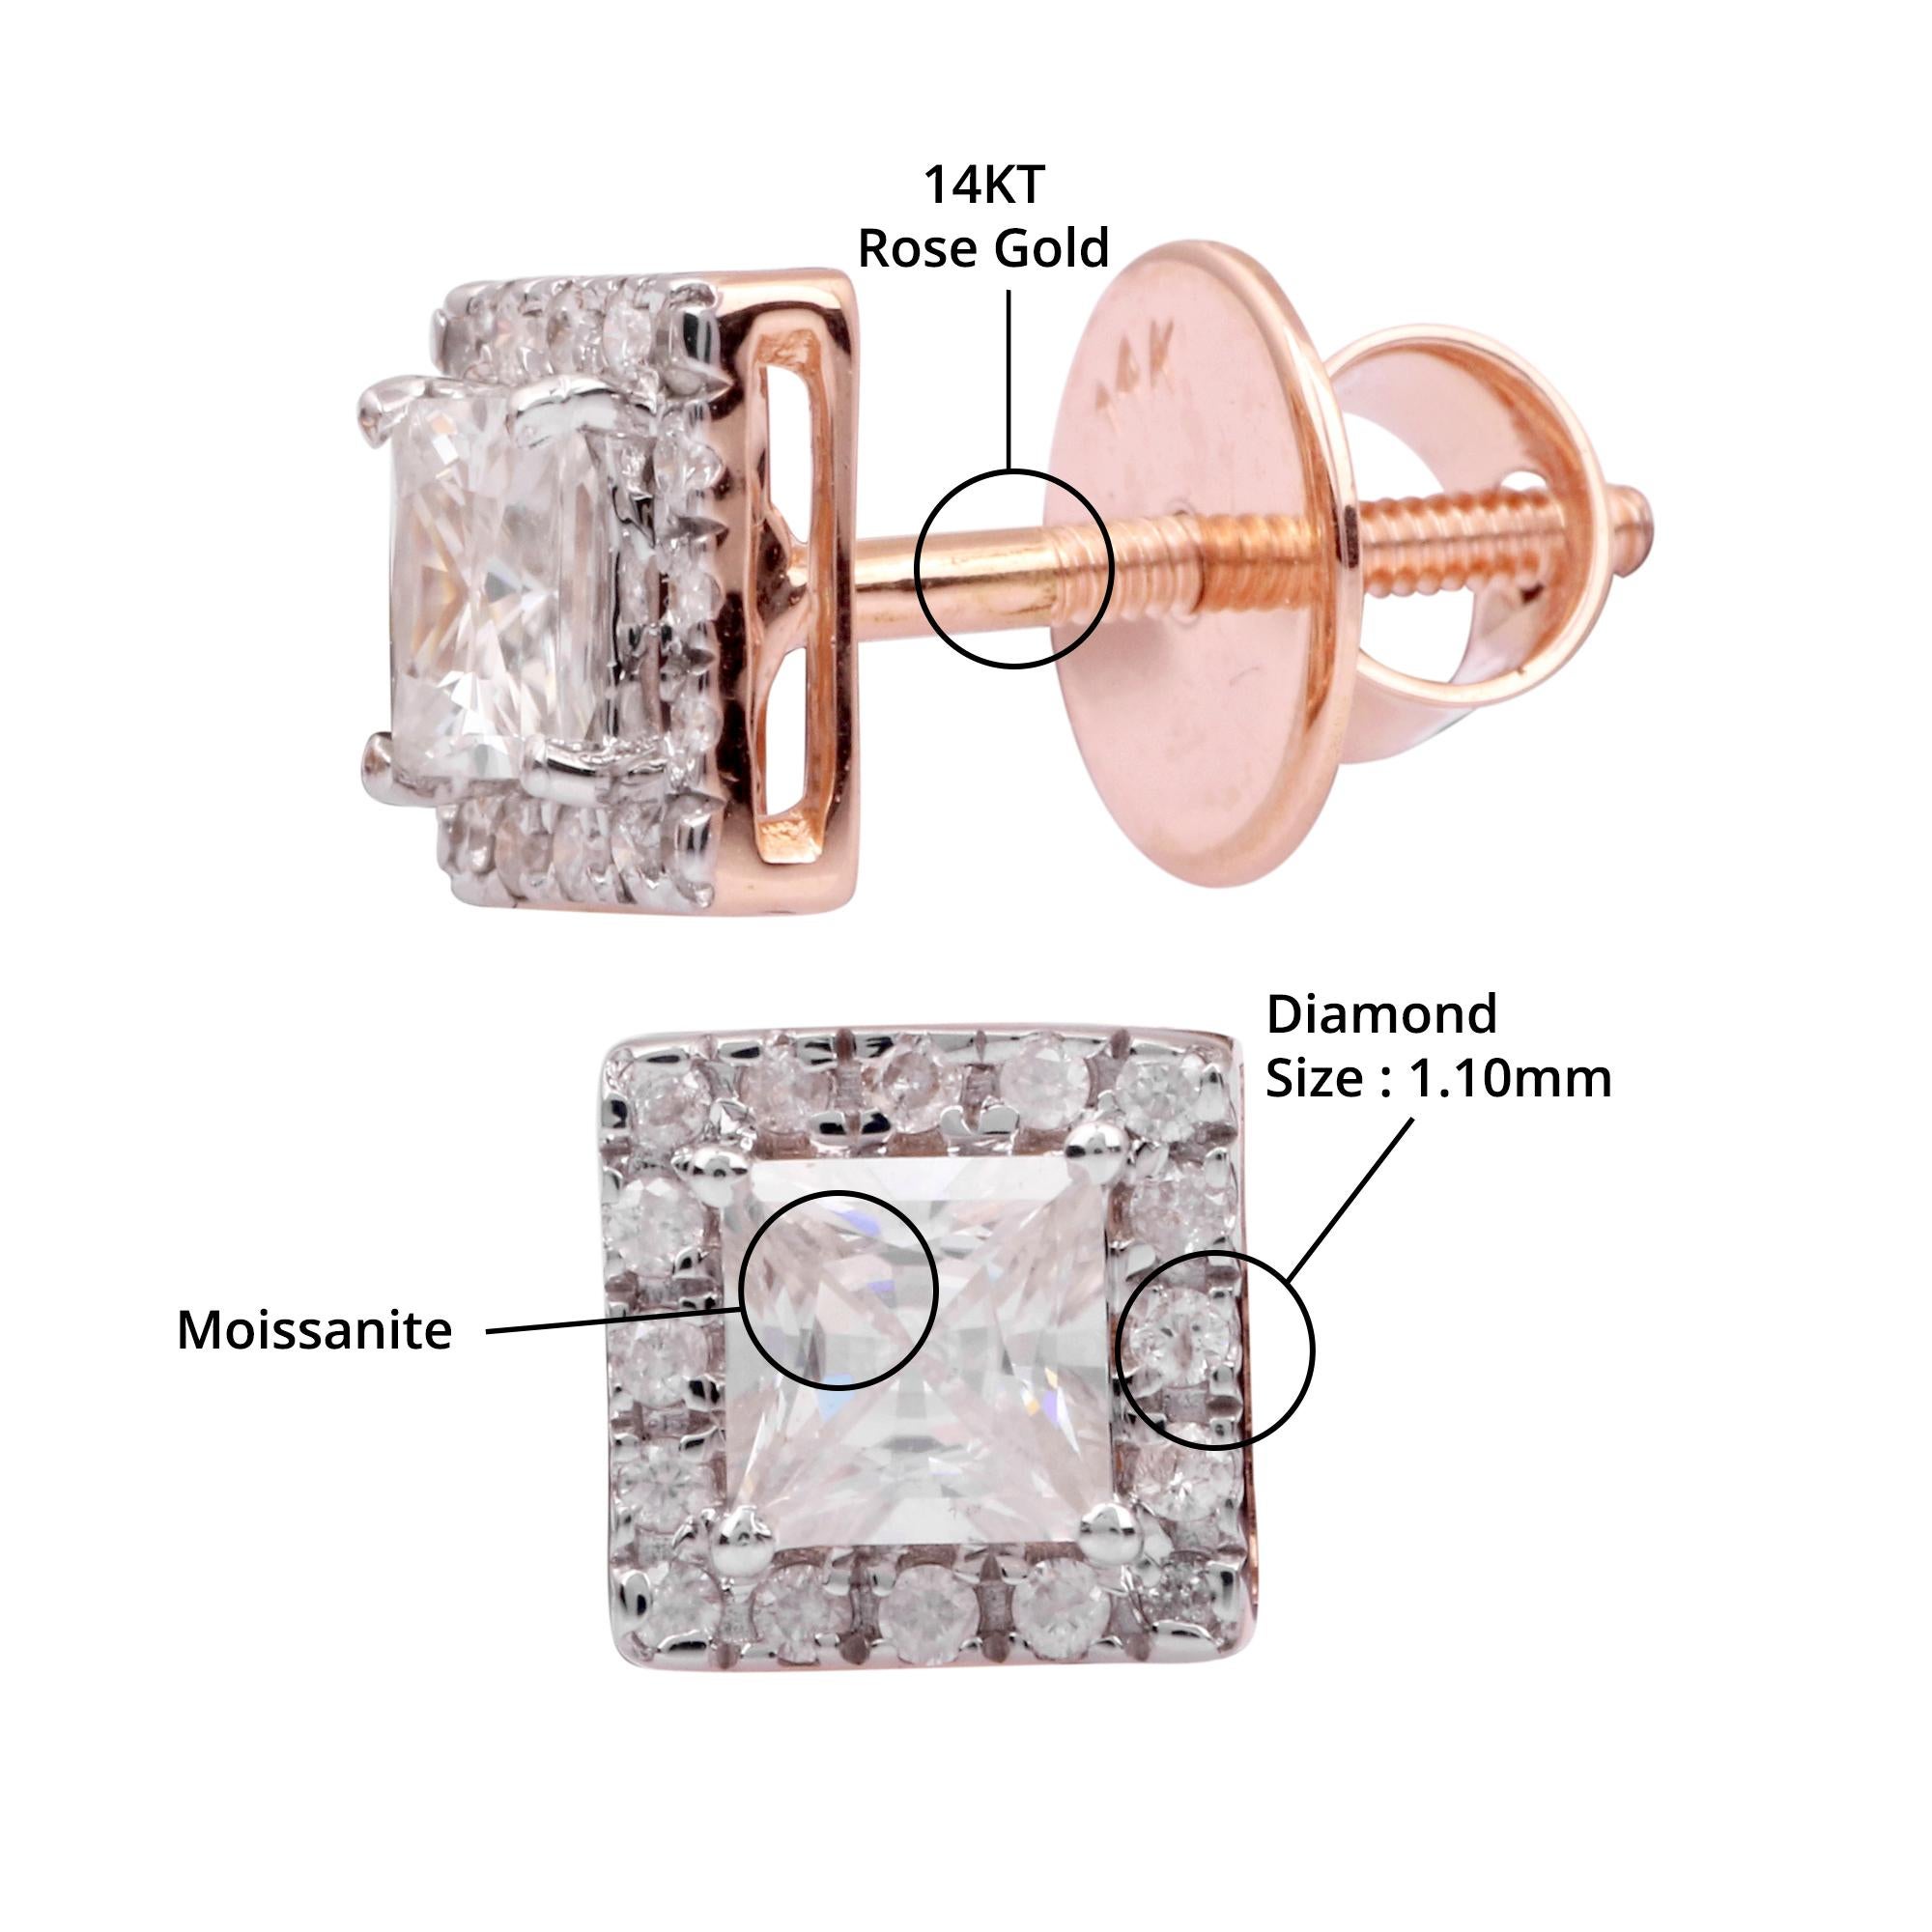 Détails de l'article:-

✦ SKU:- JER00711RRR

MATERIAL :- Or

✦ Pureté du métal : or rose 14K 

✦ Gemstone Specification:-
✧ Diamant clair (l1/HI) rond - 1.10mm - 32 pièces
✧ Moissanite princesse claire (VVS/DE) - 2 Pcs


✦ Approx. Poids en carats du